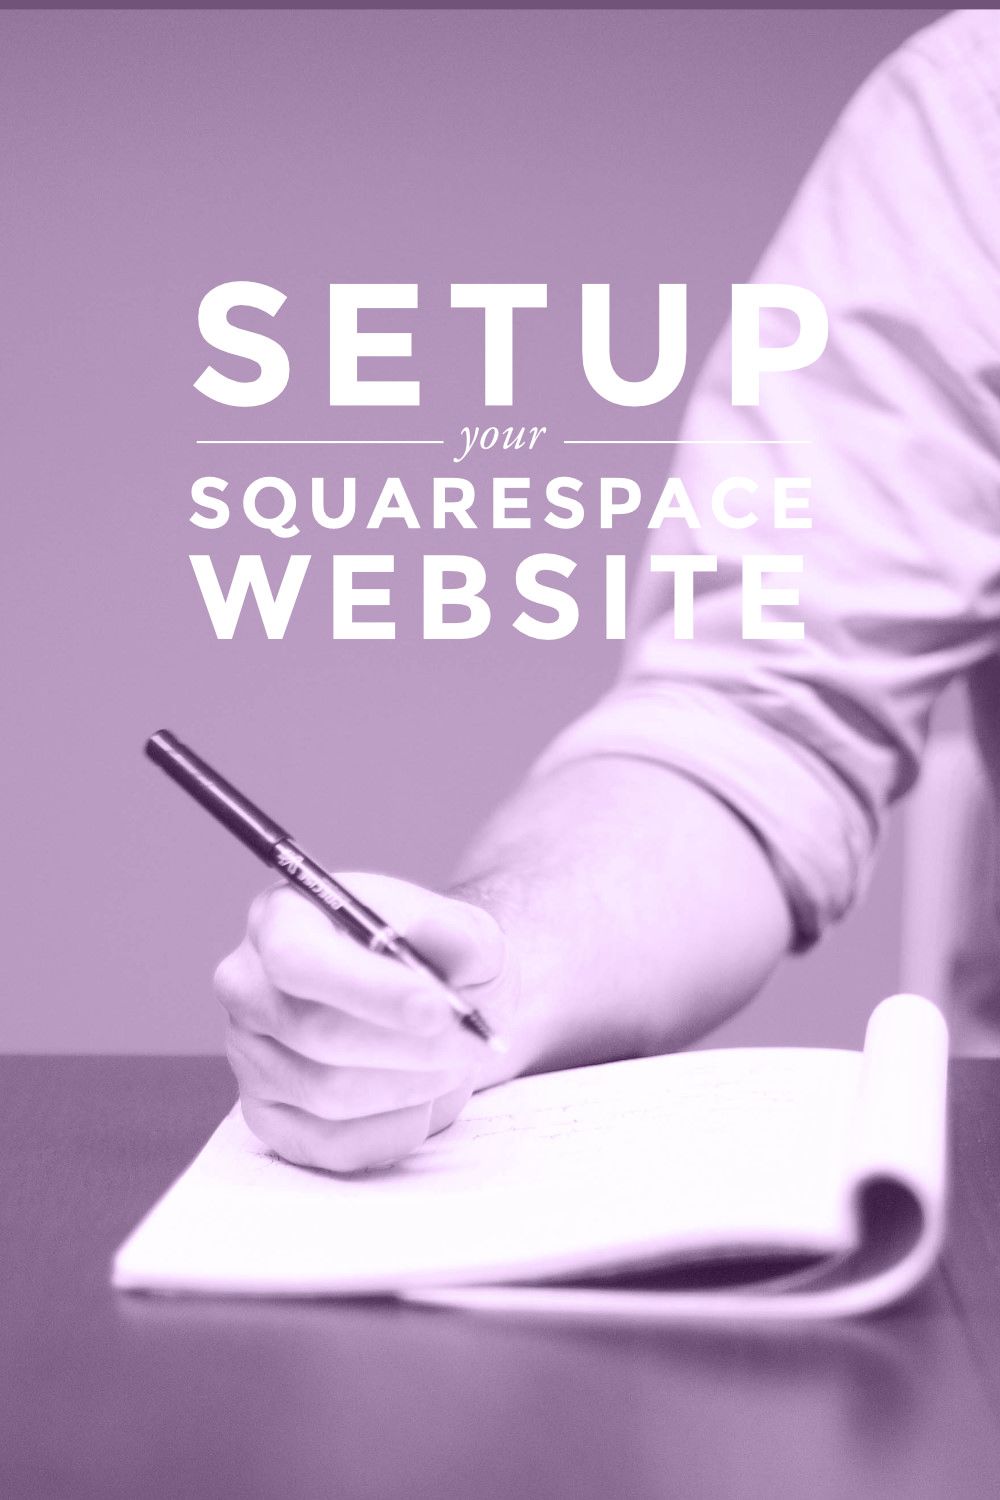 How to Get Your Squarespace Website Setup